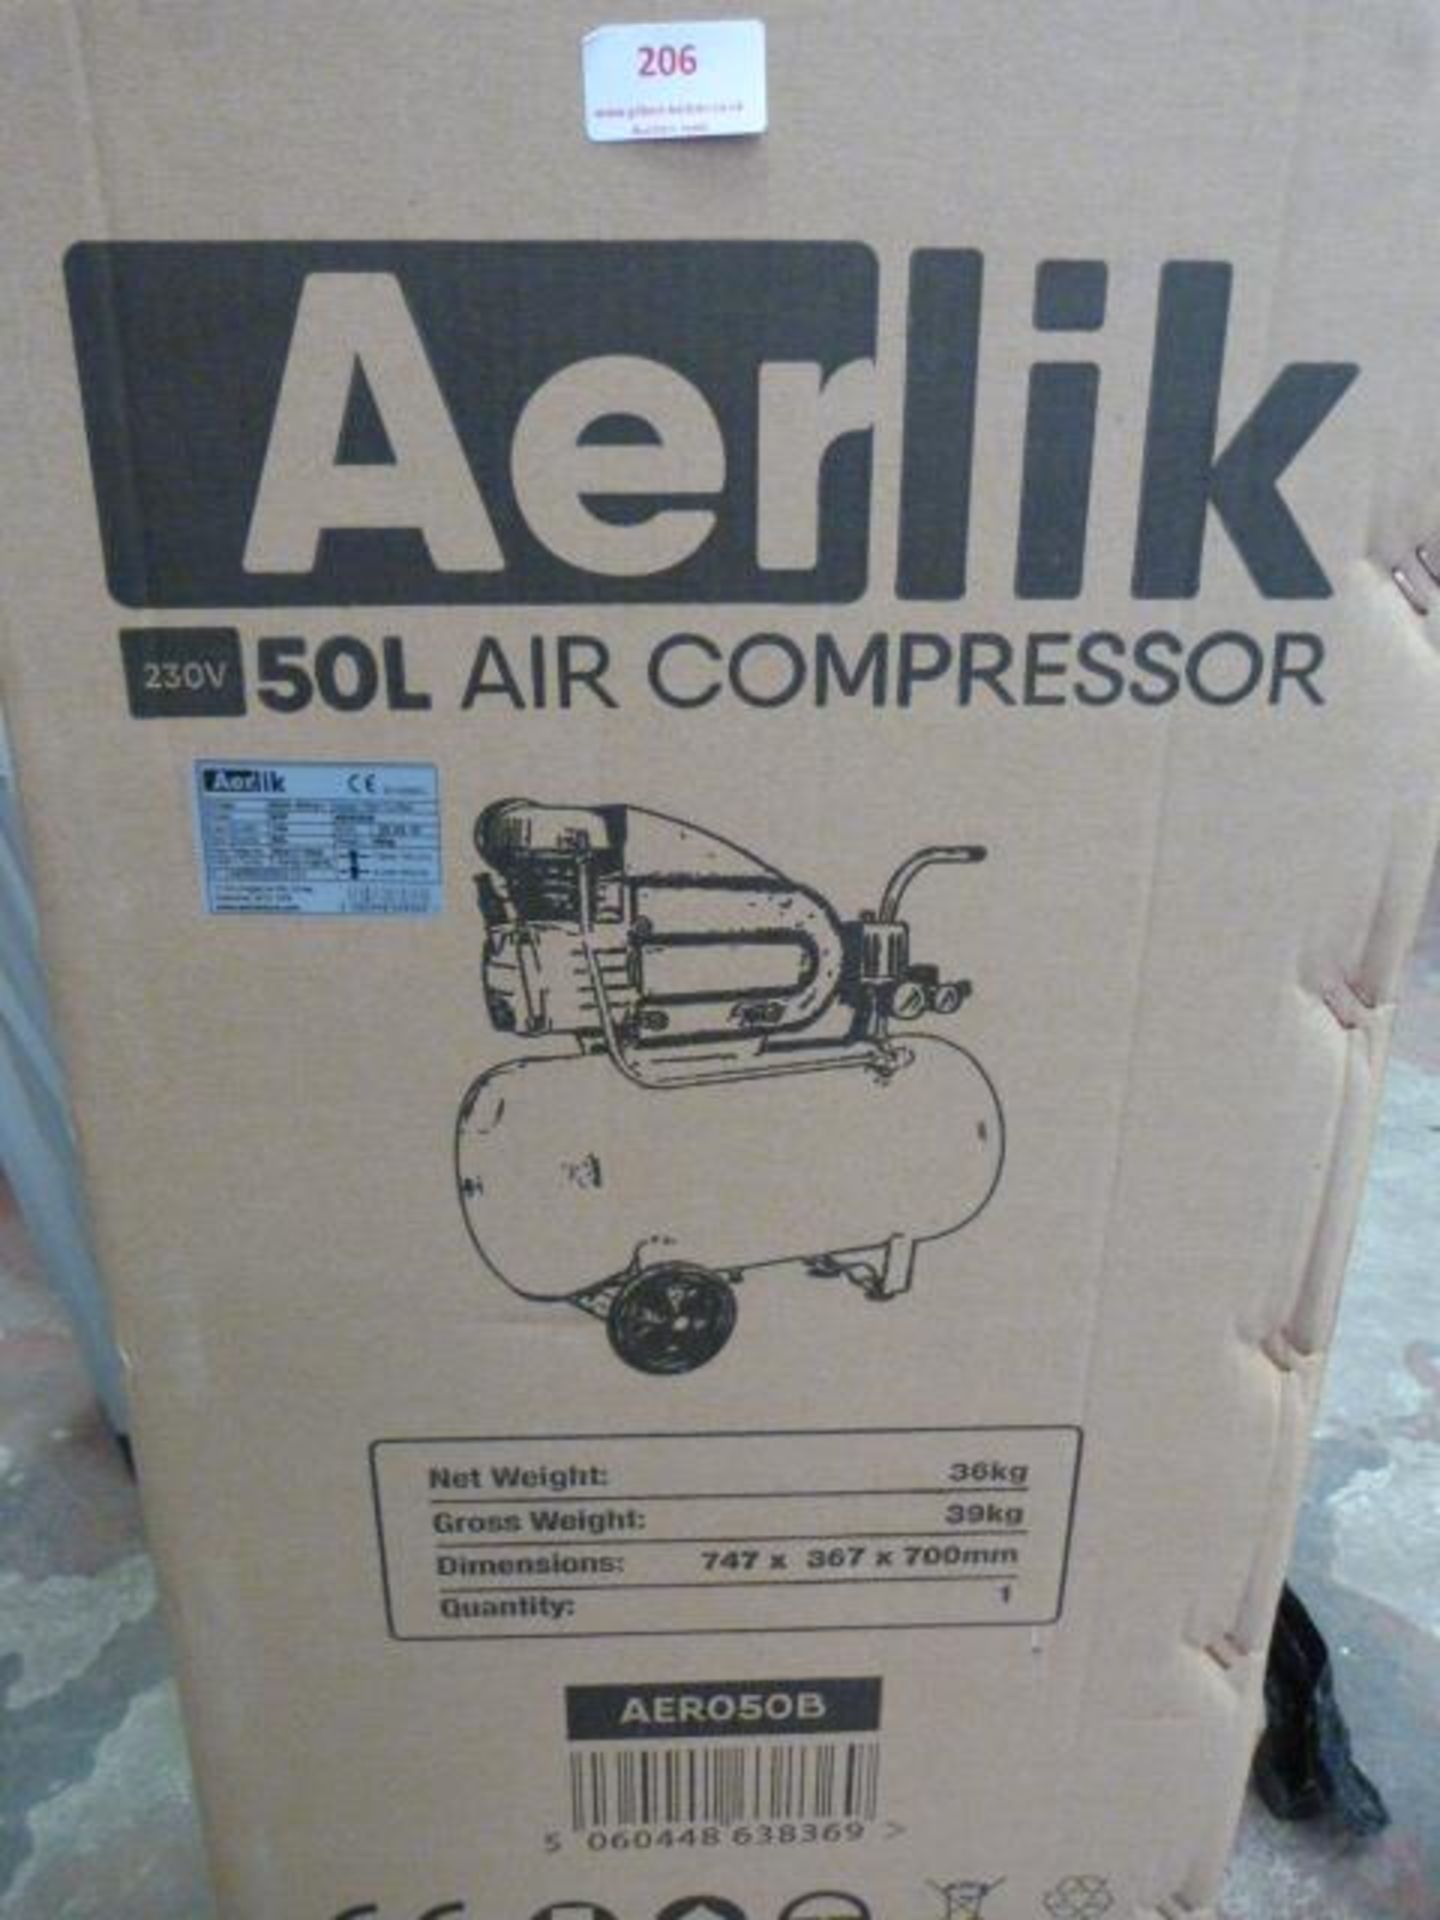 *Airelik 50L Air Compressor